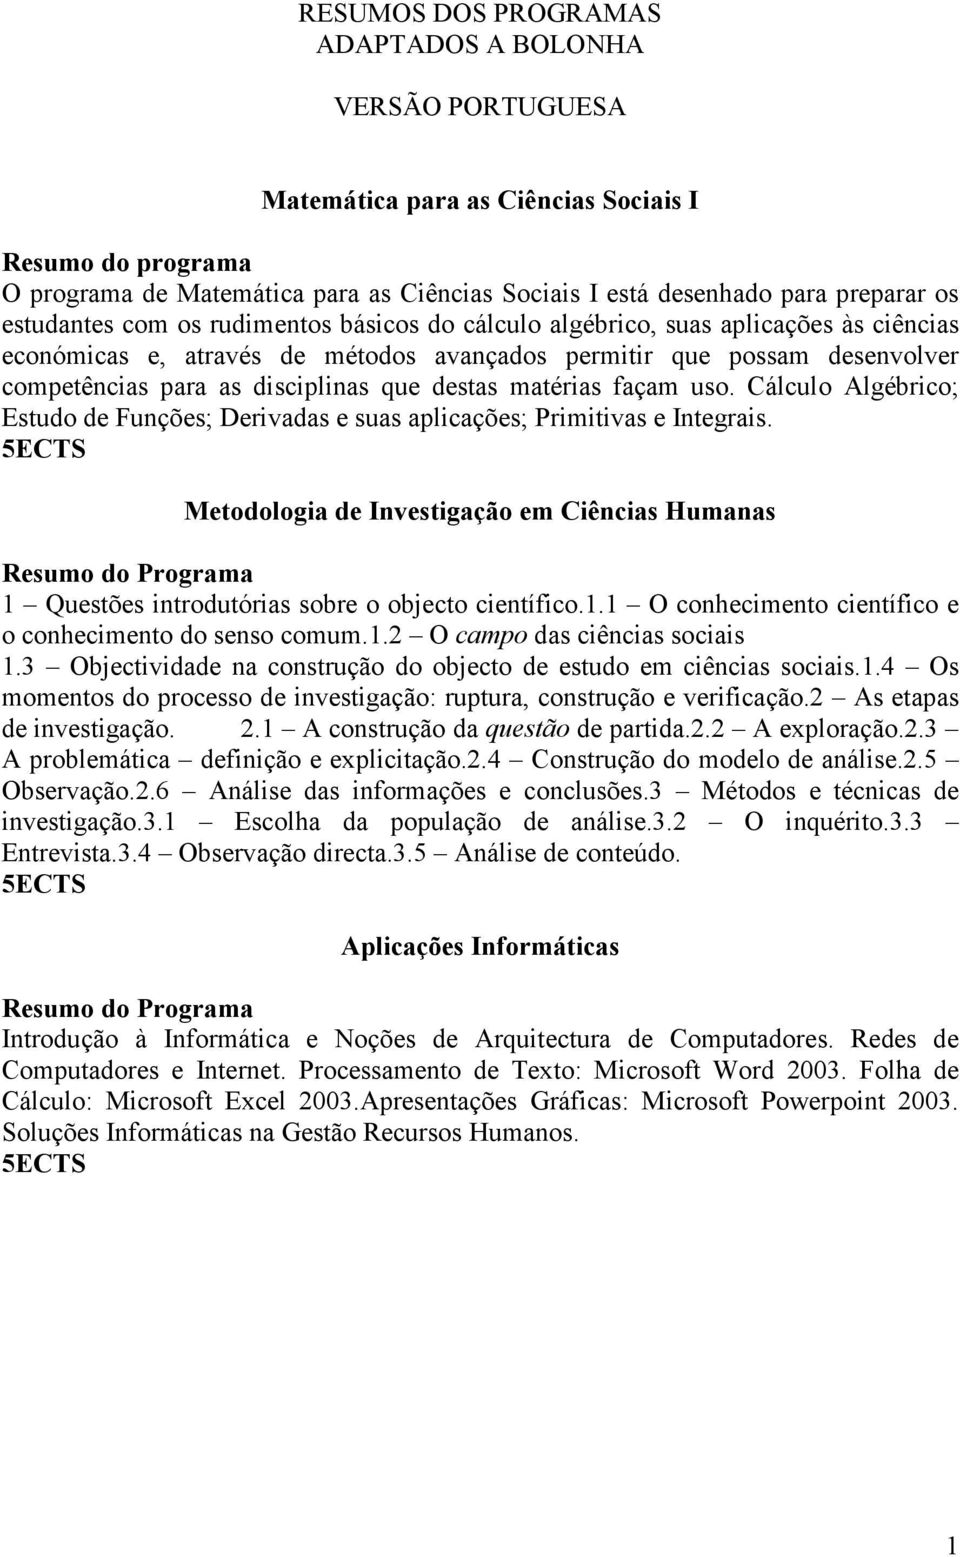 façam uso. Cálculo Algébrico; Estudo de Funções; Derivadas e suas aplicações; Primitivas e Integrais.